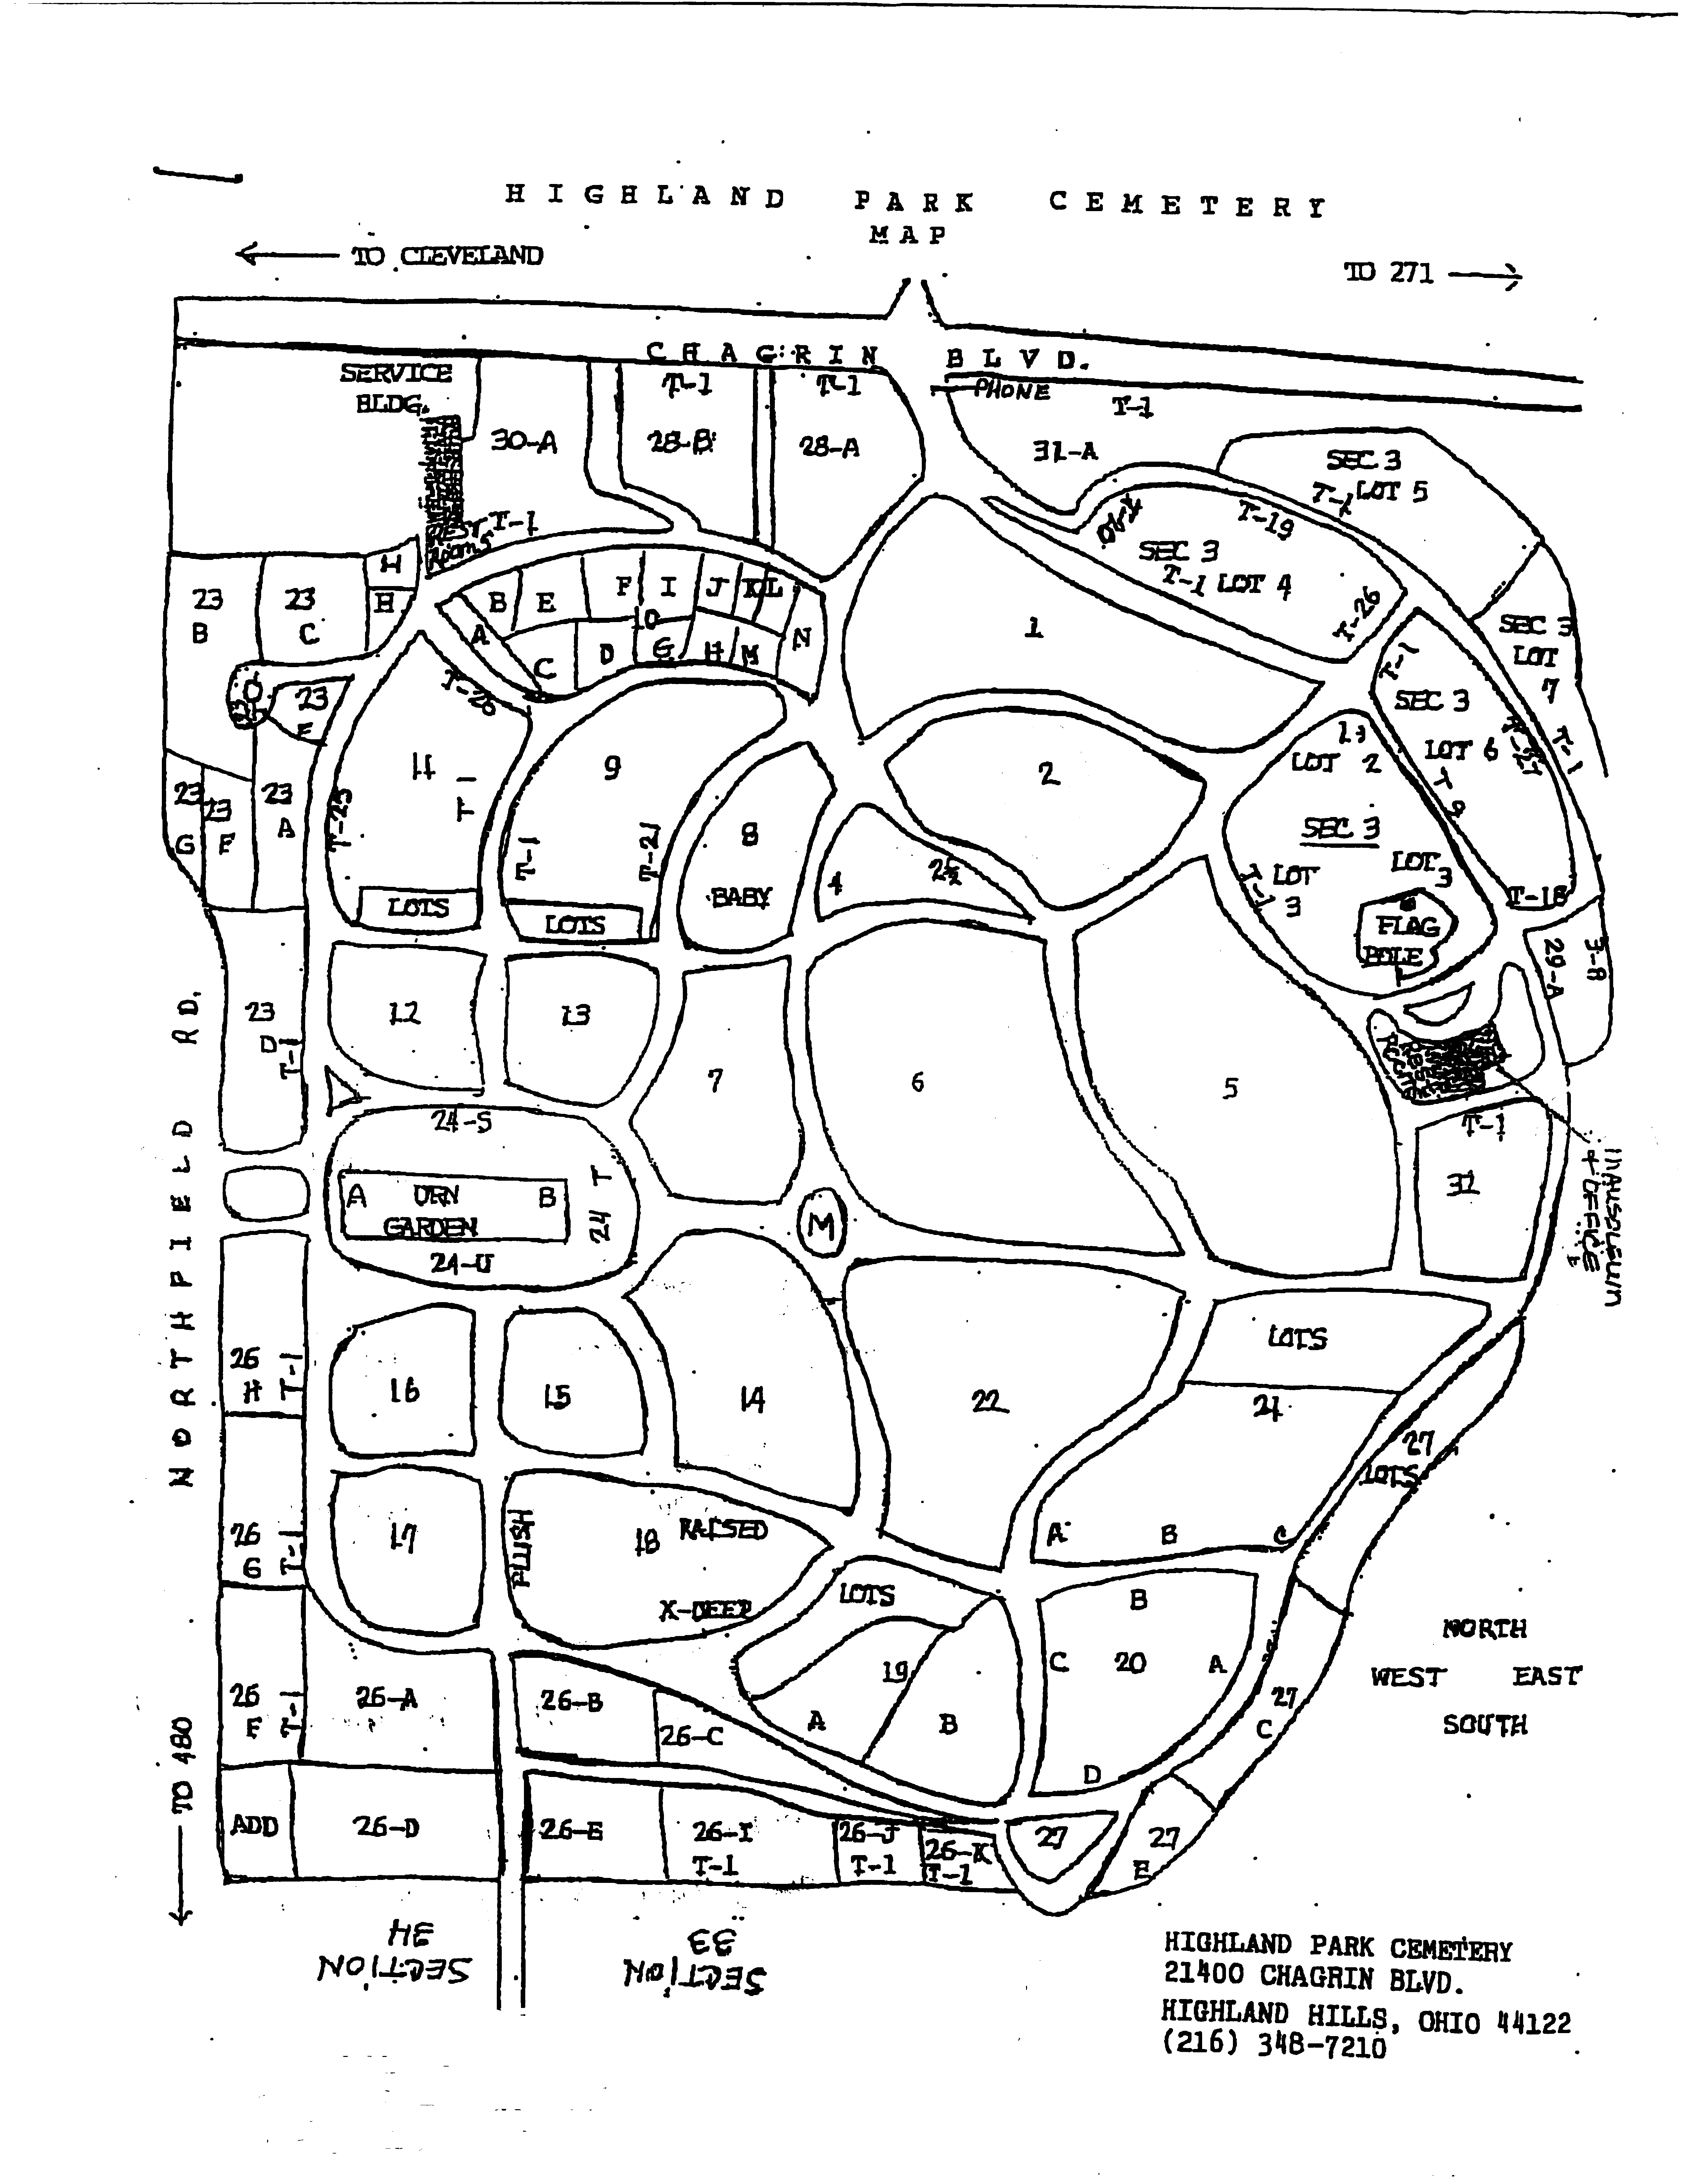 Original Plot Map, Highland Park, Cleveland, Ohio, USA